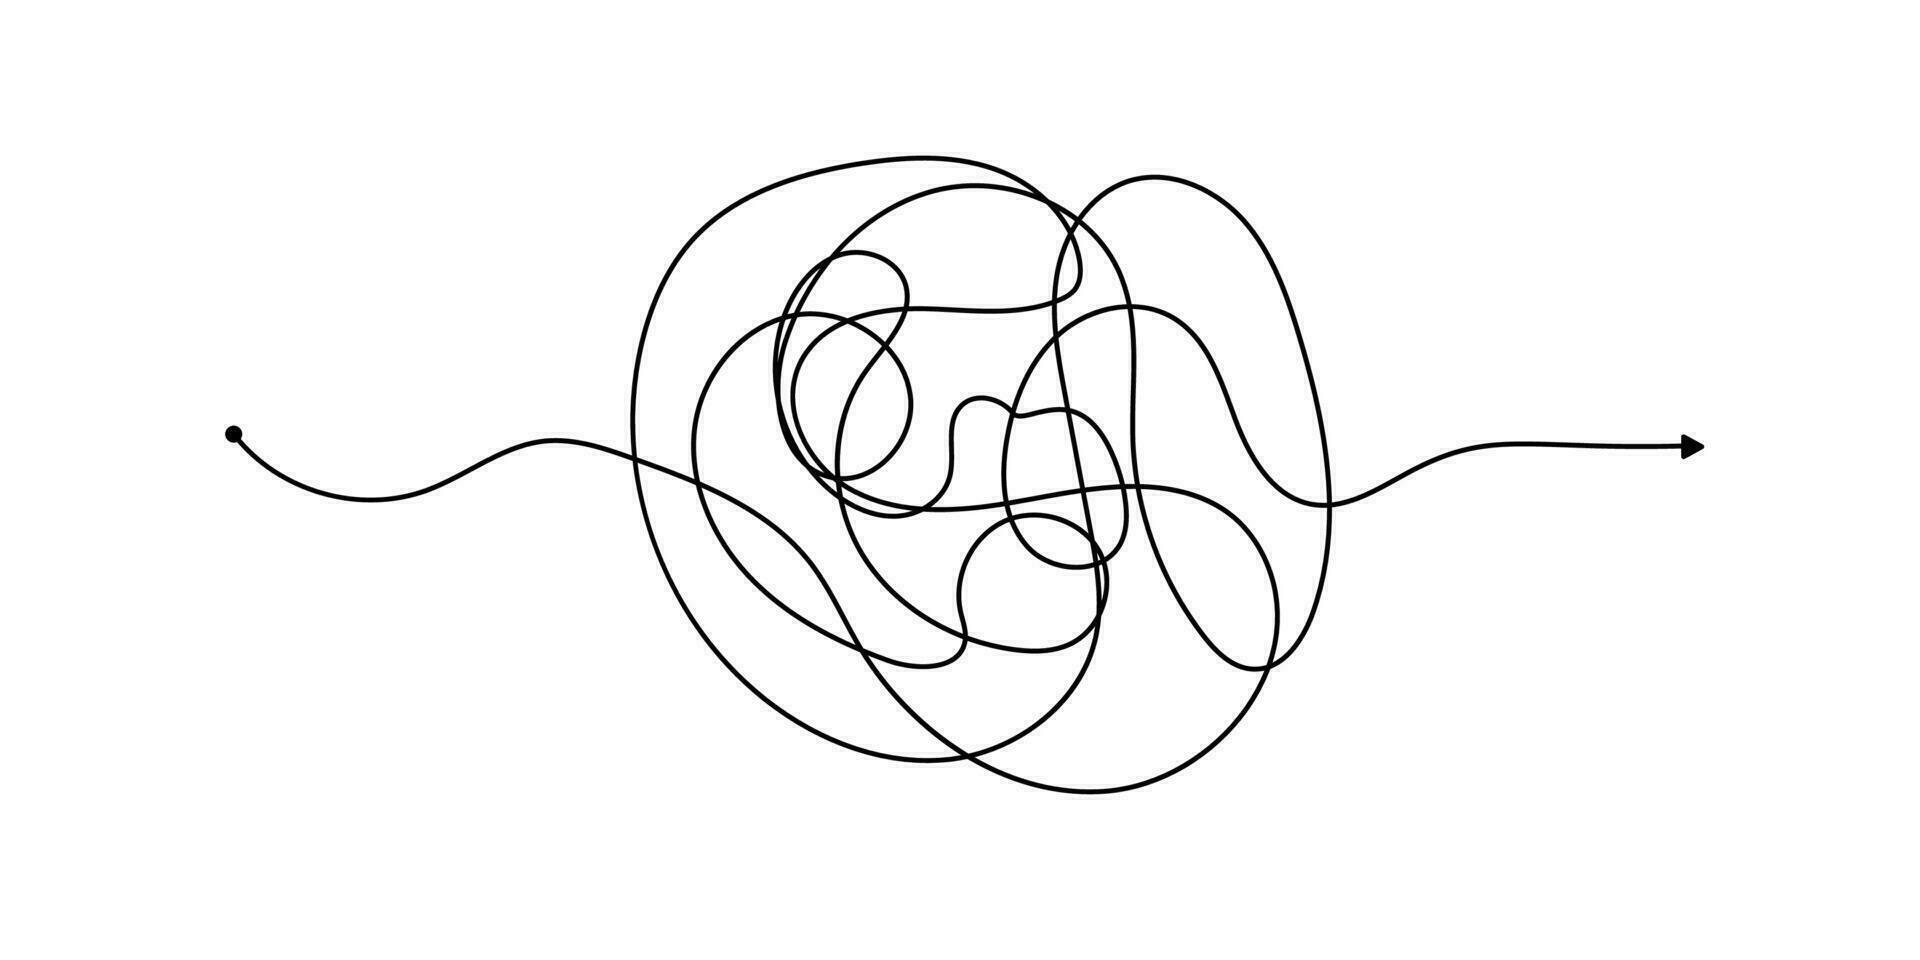 vektor psykoterapi komplex kaos röra och beställa väg. rörig dragen skiss ändamål enkel boll begrepp klottra. kaos Knut linje psykoterapi kontinuerlig vektor illustration konst.